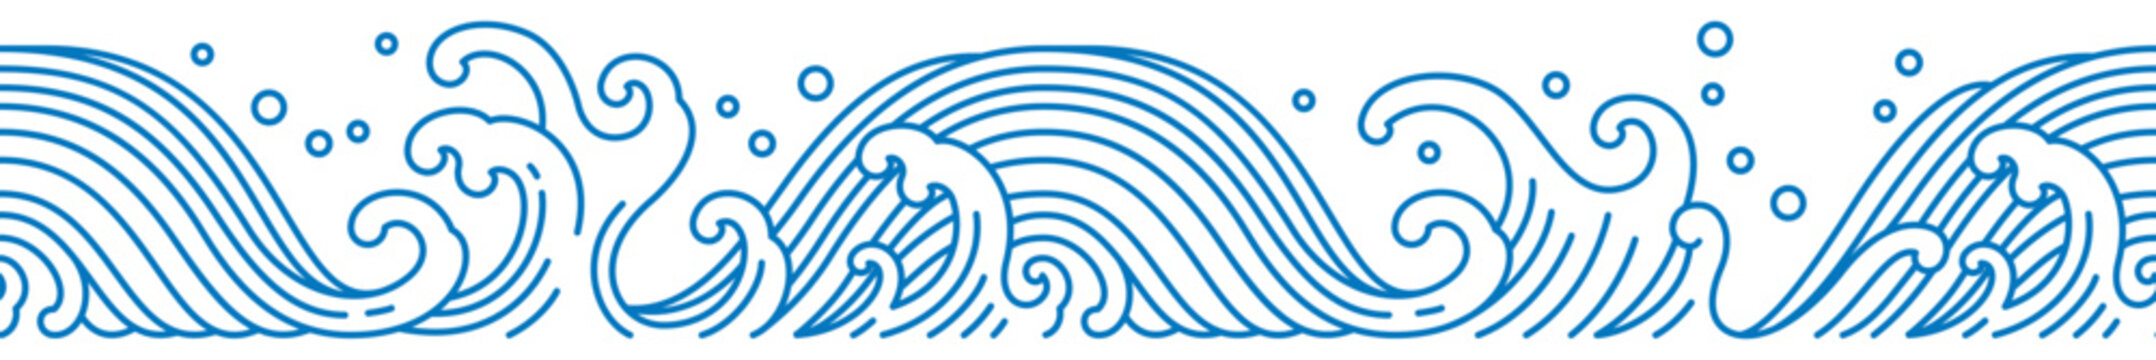 Oriental water wave seamless pattern. Line art.